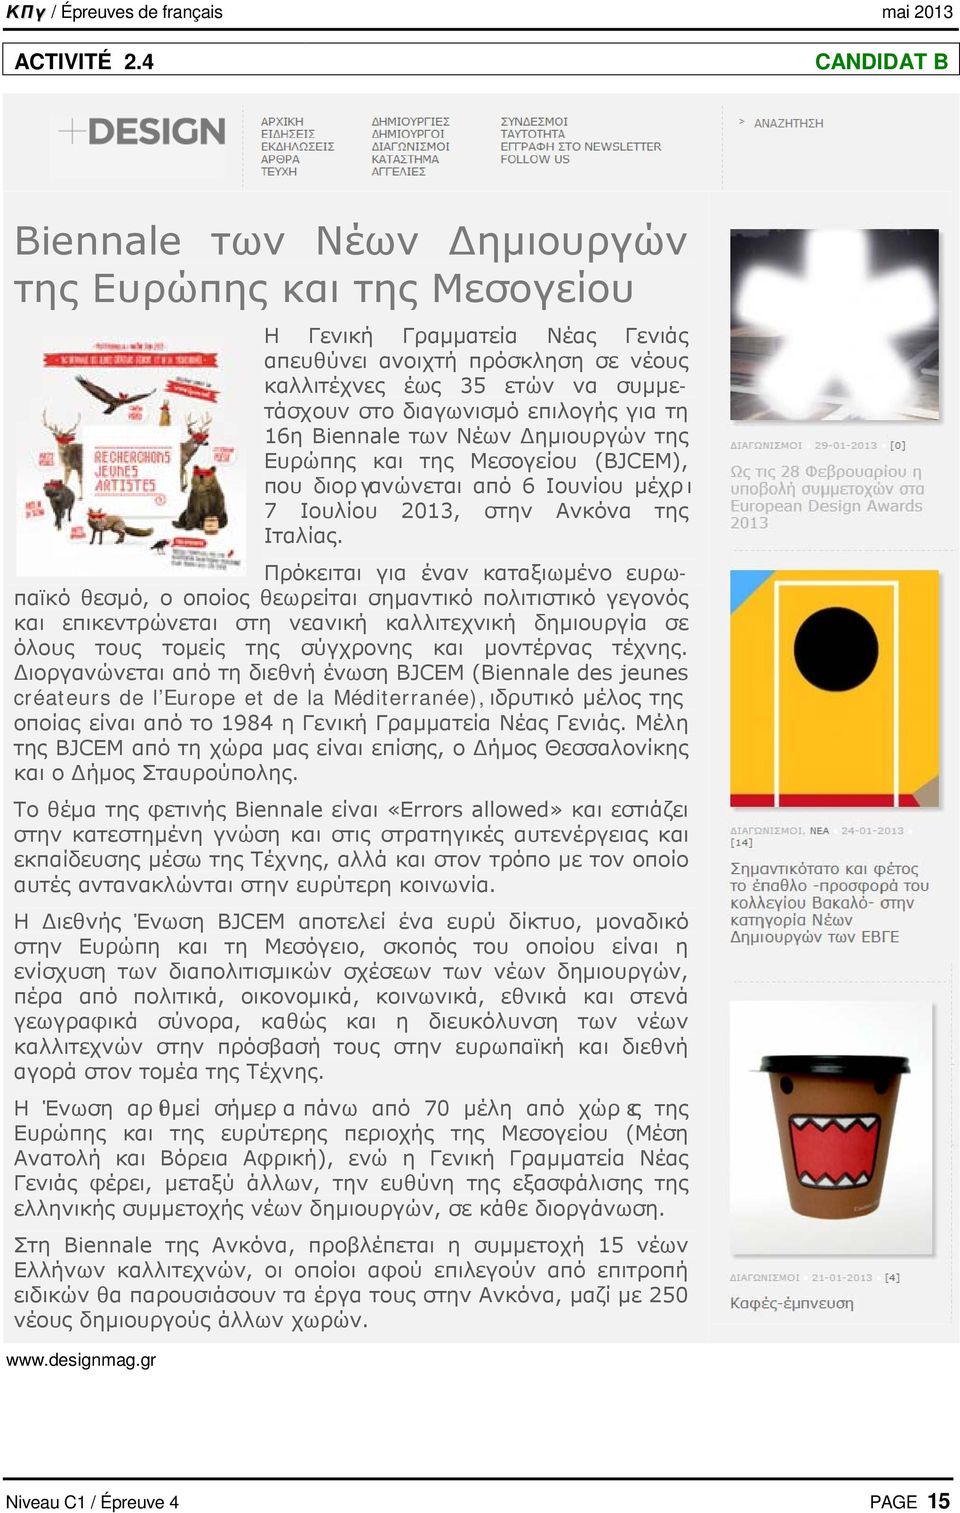 επιλογής για τη 16η Biennale των Νέων Δημιουργών της Ευρώπης και της Μεσογείου (BJCEM), που διοργανώνεται από 6 Ιουνίου μέχρι 7 Ιουλίου 2013, στην Ανκόνα της Ιταλίας.